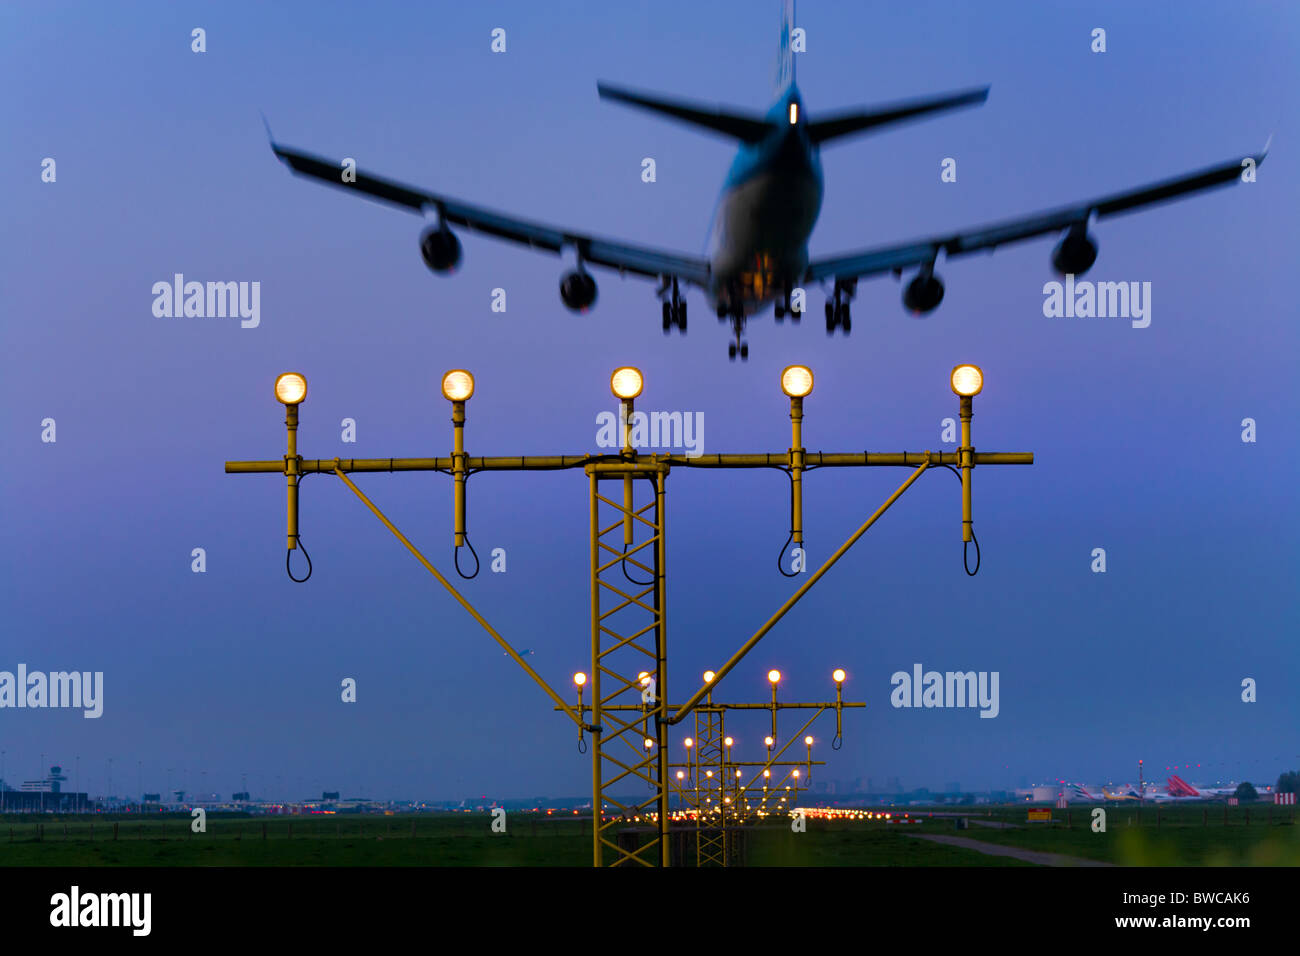 KLM piano aereo di avvicinamento e di atterraggio, sulla pista Kaagbaan dell'aeroporto Schiphol di Amsterdam al crepuscolo. Foto Stock